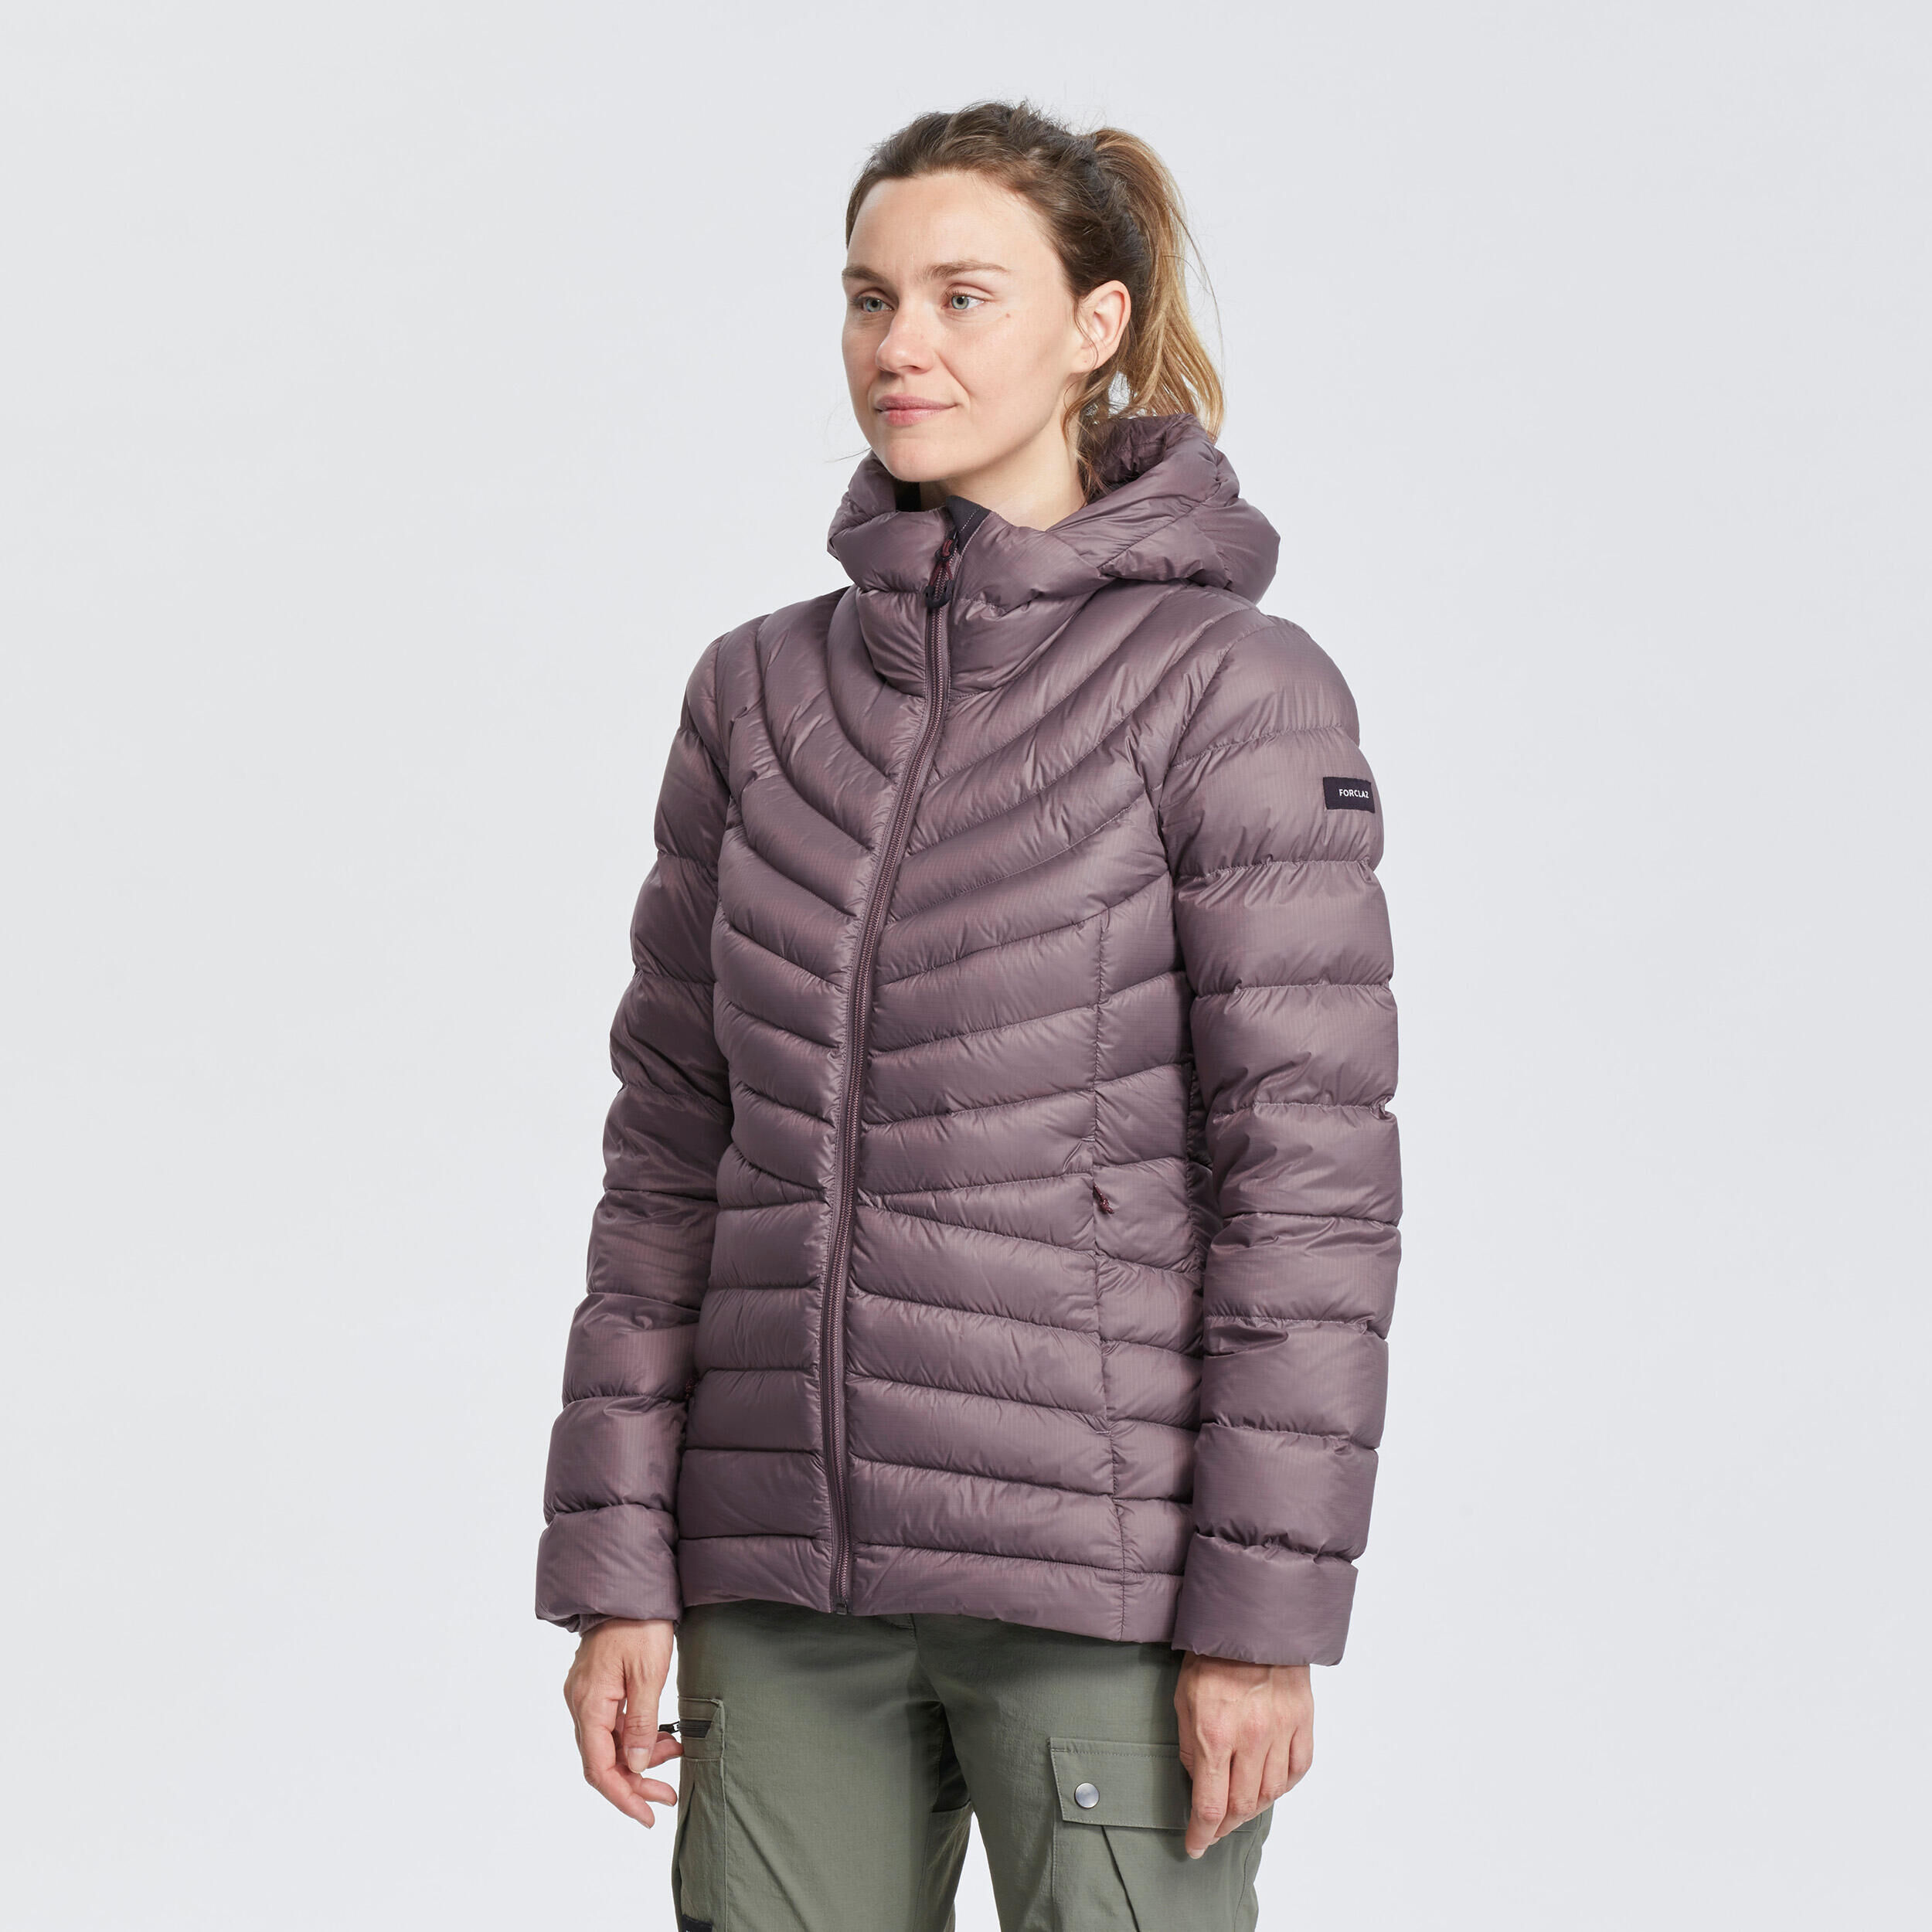 FORCLAZ Women’s mountain trekking hooded down jacket - MT500 -10°C